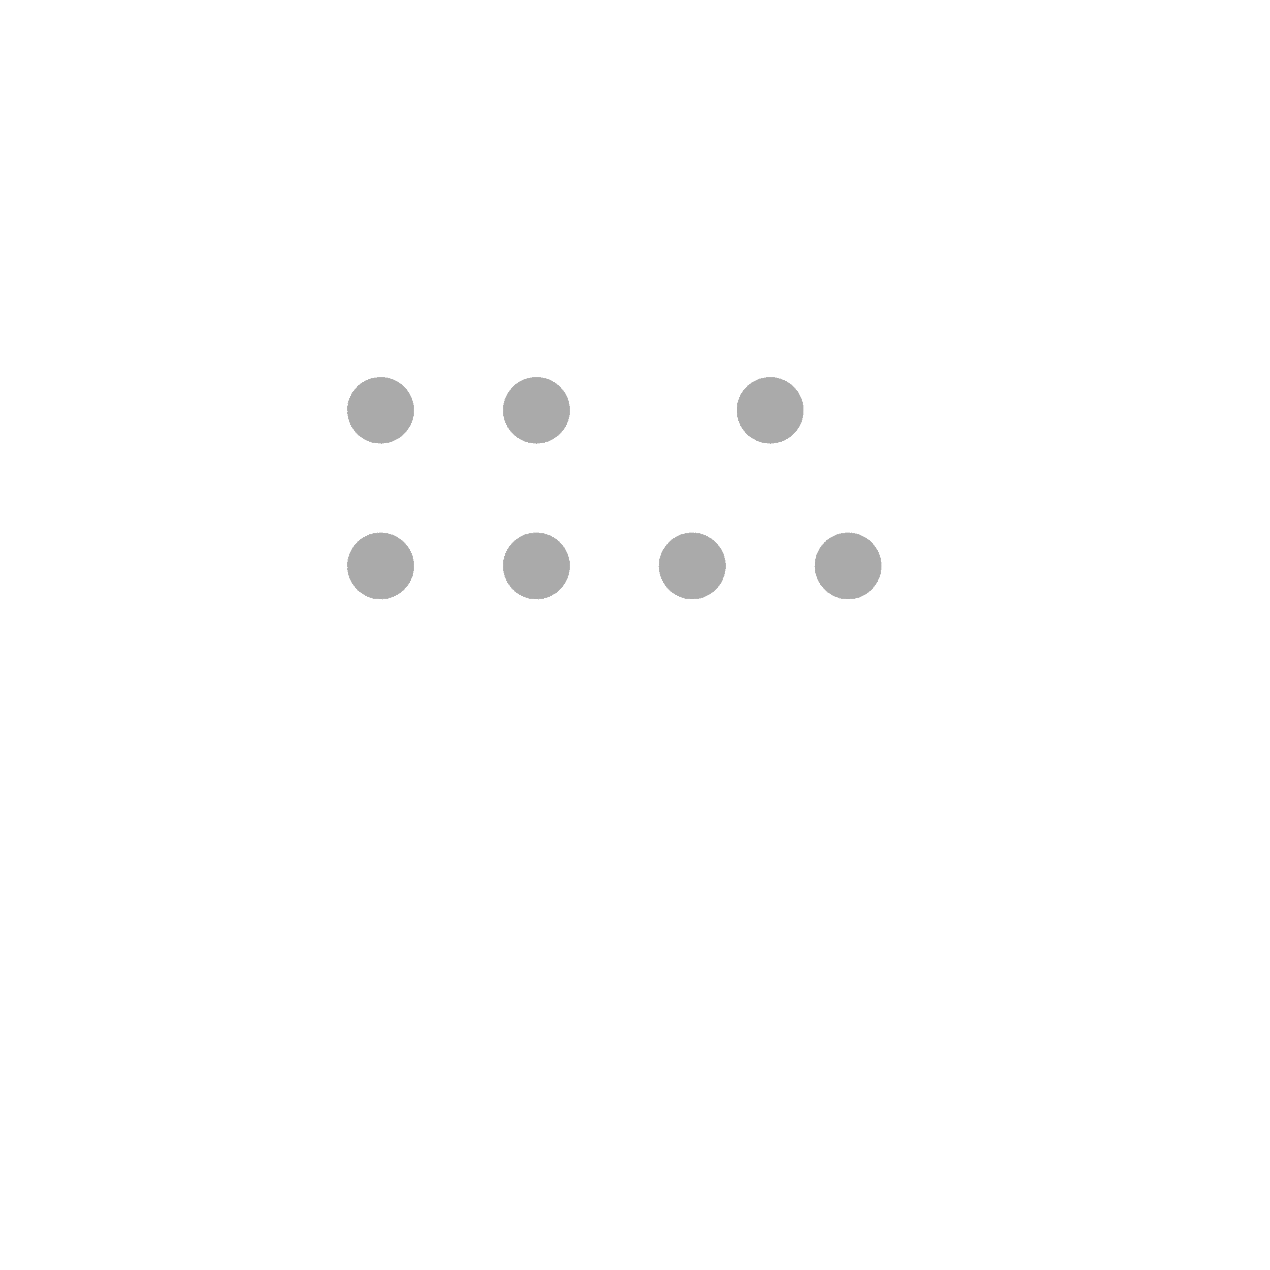 Ola Mediaロゴ - 代理店とブランド